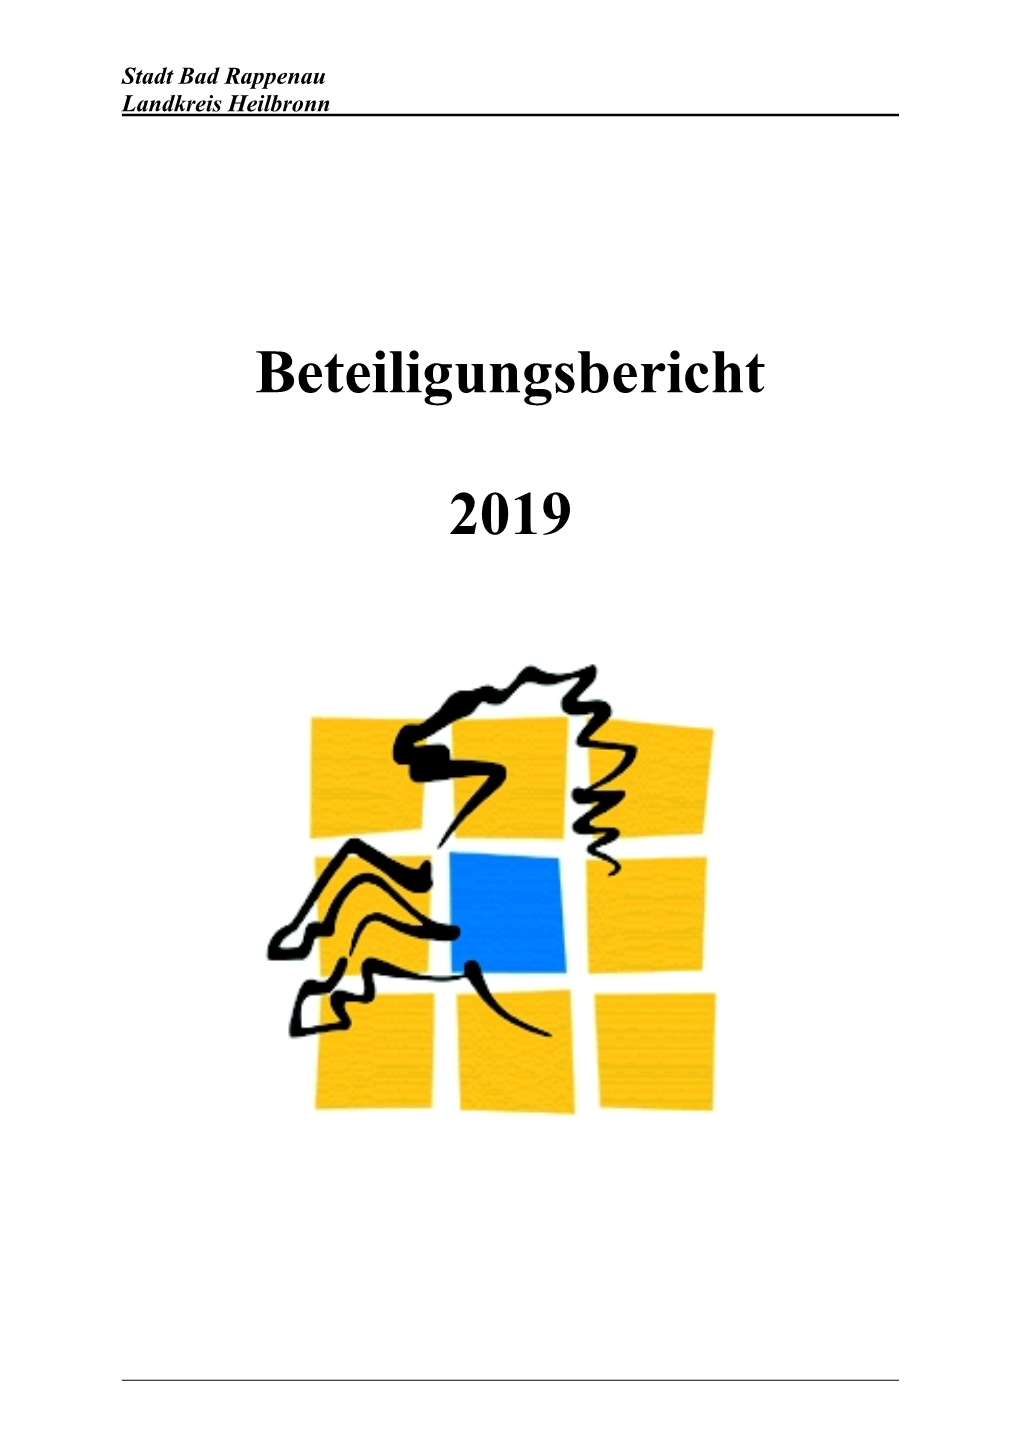 Beteiligungsbericht 2019 Landkreis Heilbronn